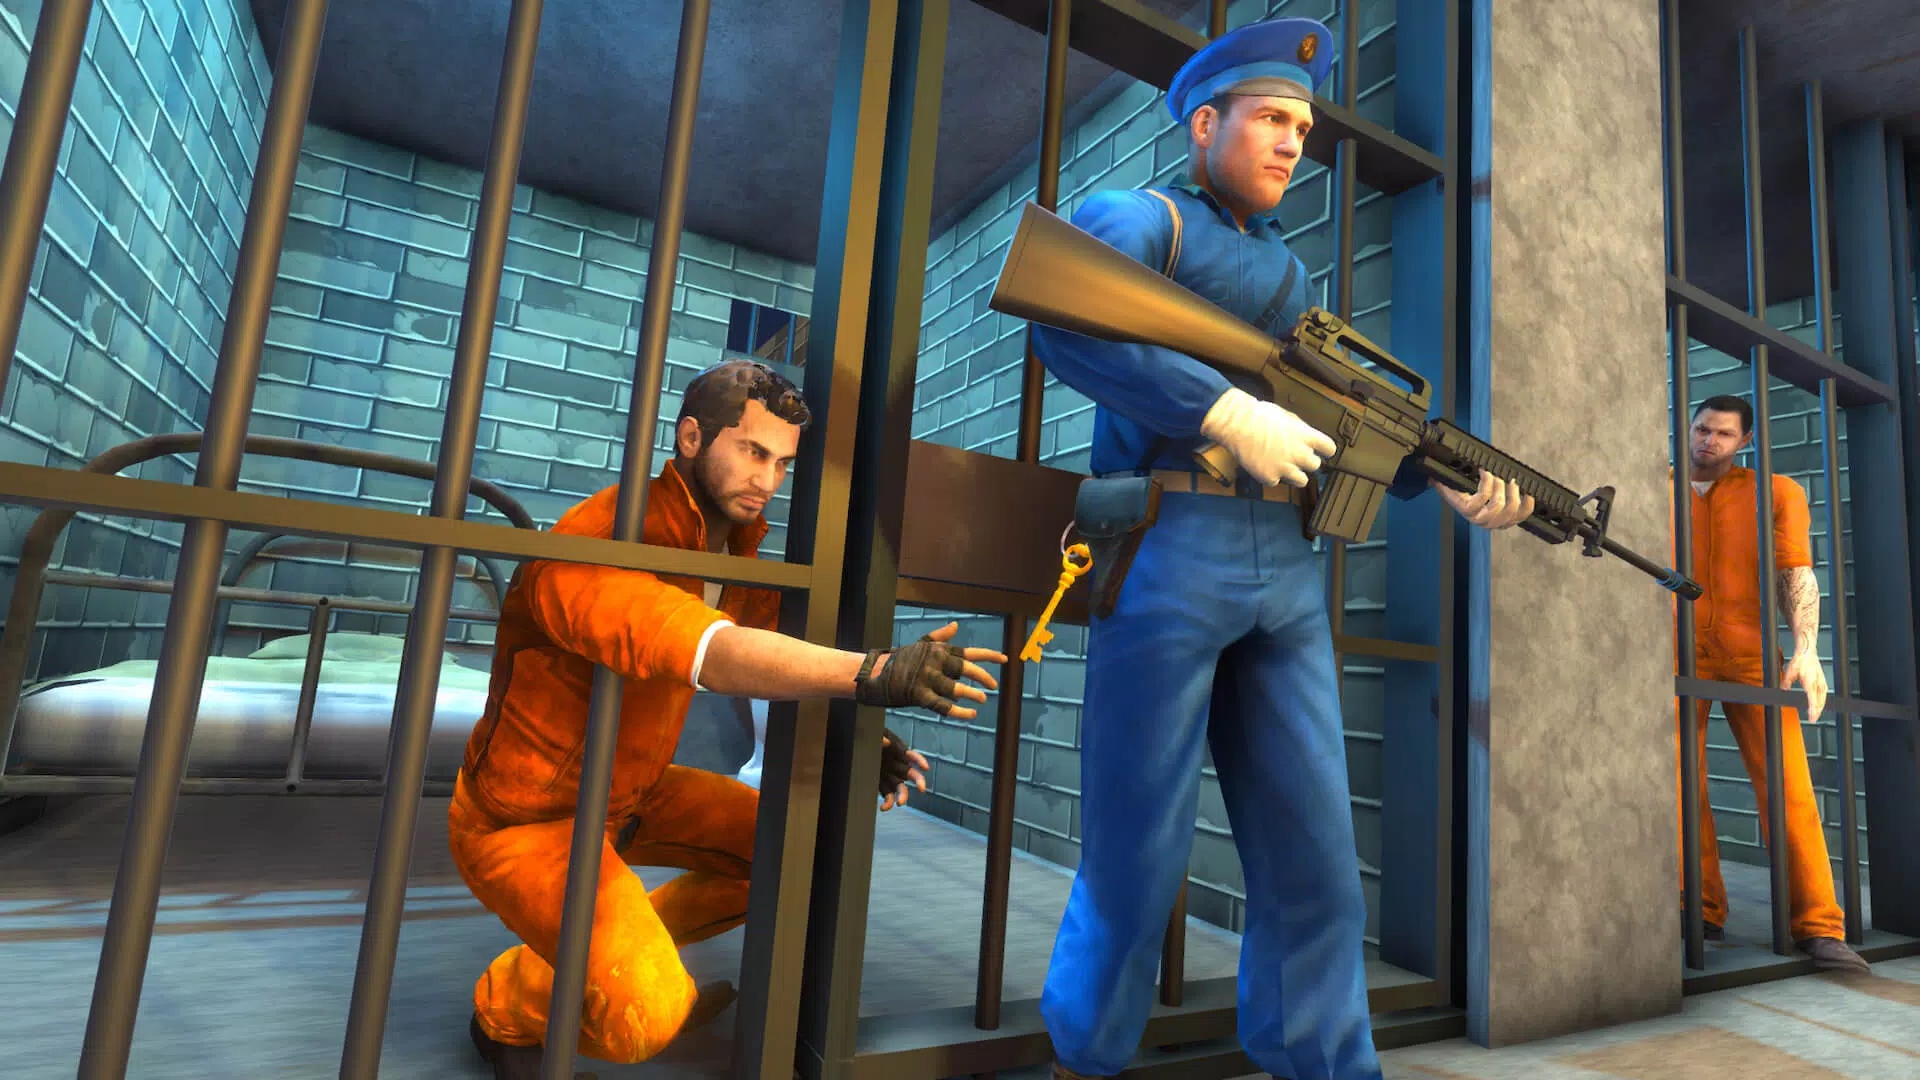 Difícil Prisão Escape Survival Story Simulator Missão da prisão Criminal:  Prisoner Jail Breakout Em Alcatraz Ação Emocionante Aventura Sim Jogos Para  Crianças Grátis::Appstore for Android